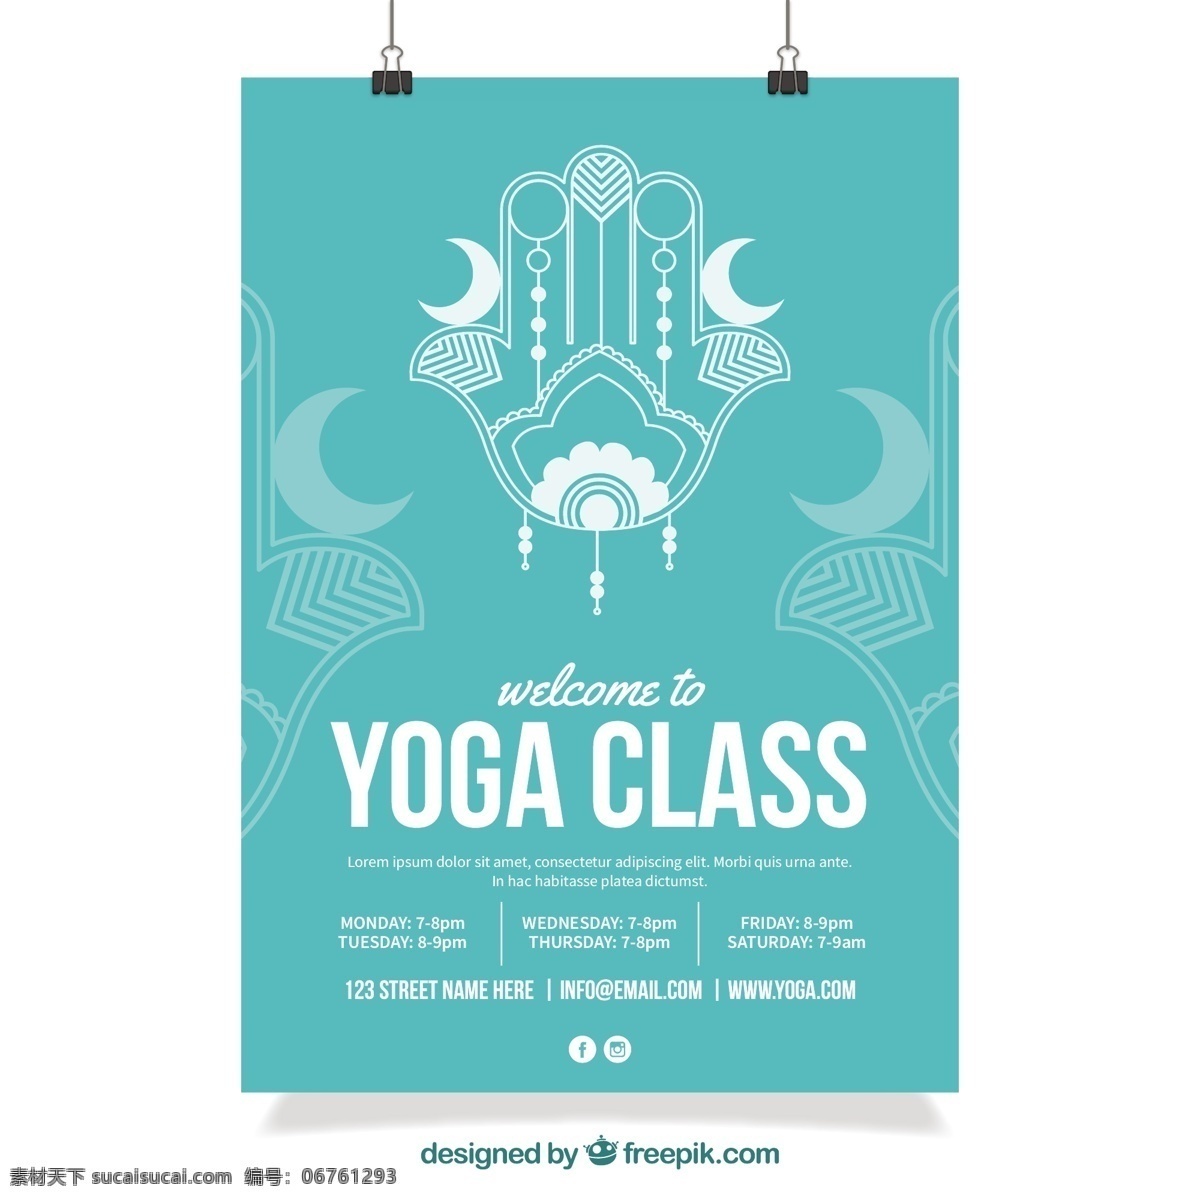 瑜伽班的海报 海报 手 健康 瑜伽 可爱 人类 绘画 和平 运动 平衡 身心 人体 放松 阶级 手画 生活方式 画 素描 白色